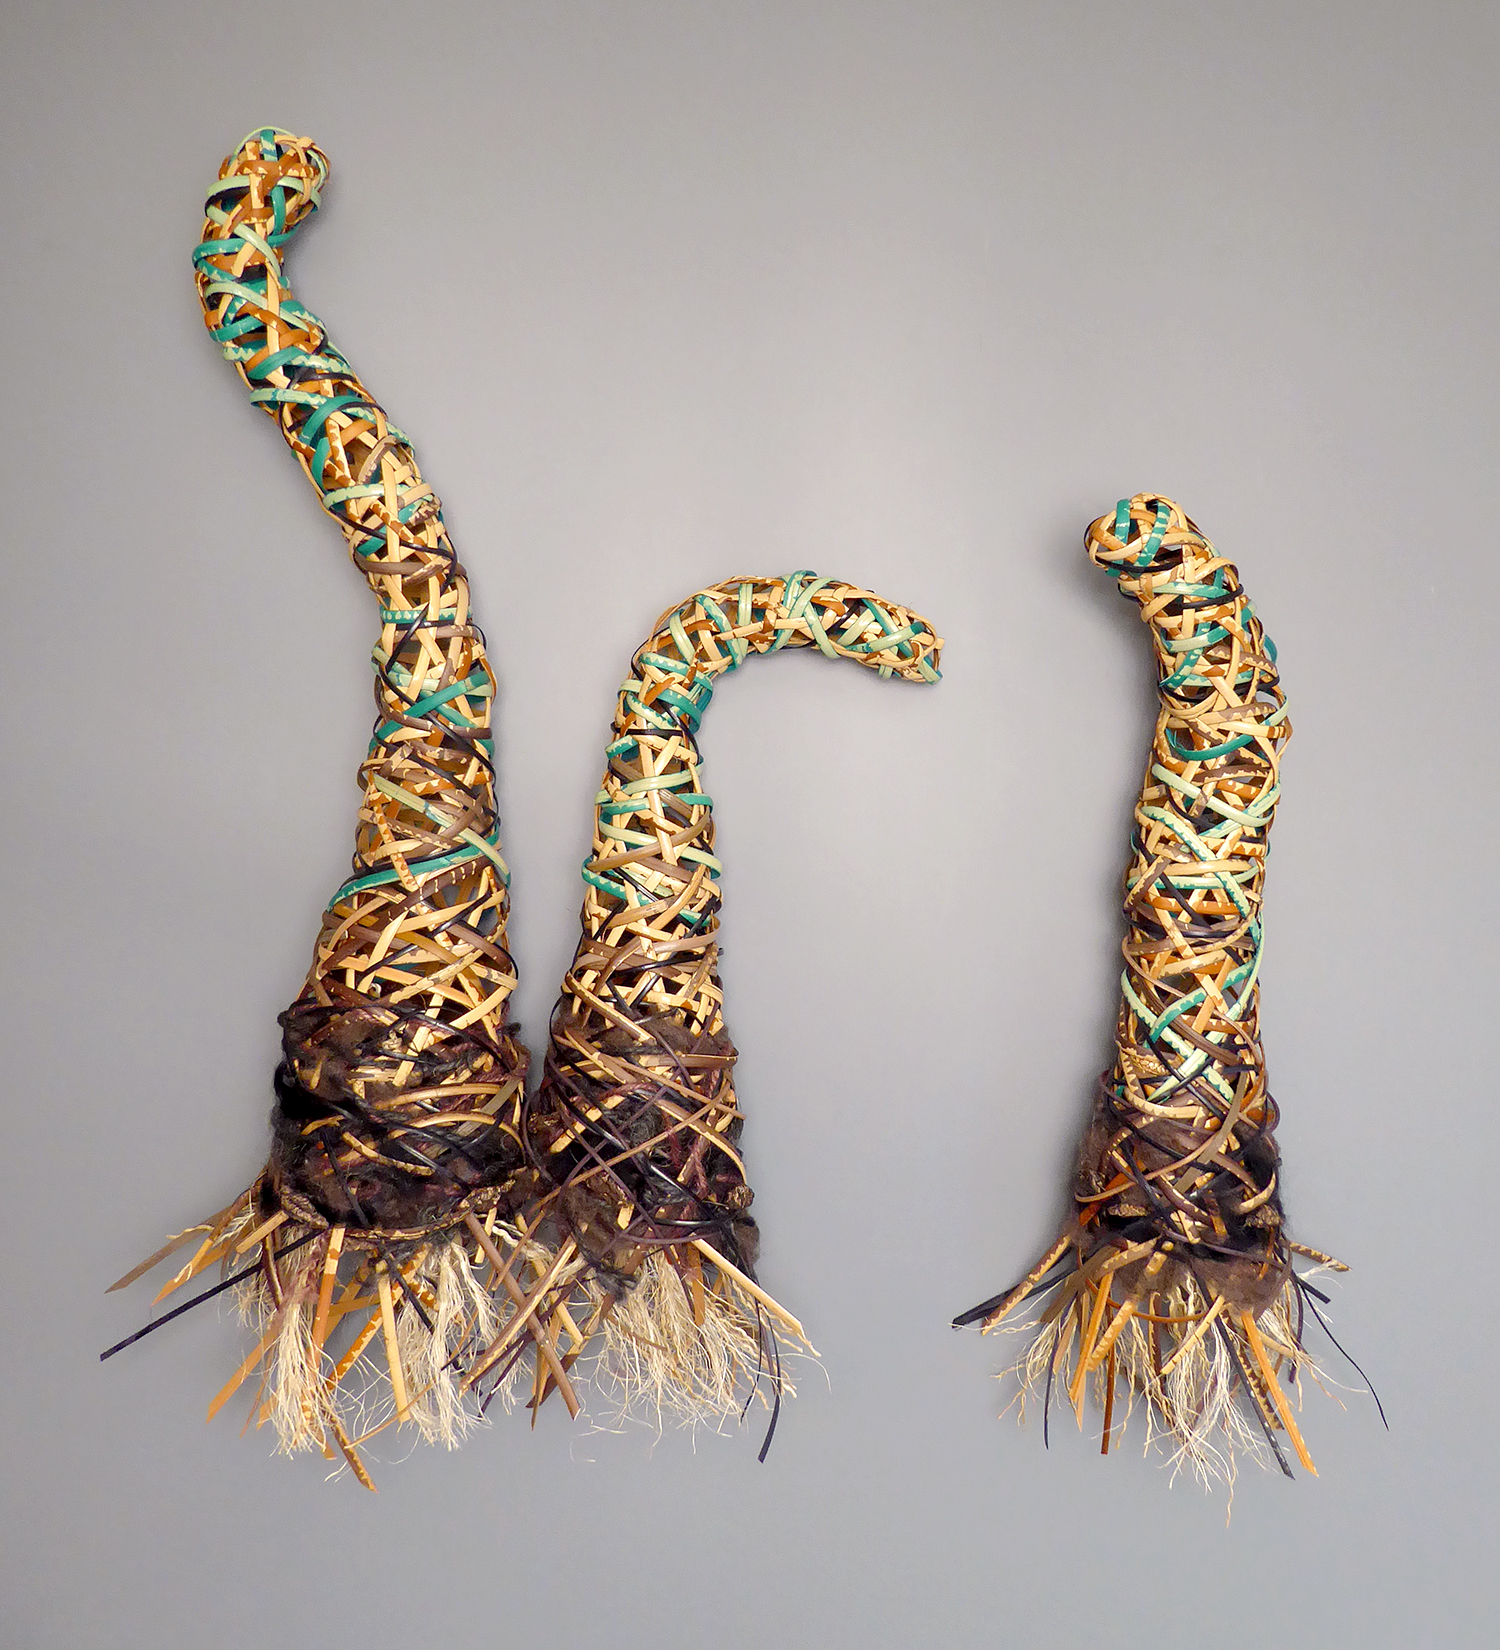 Linda Tapscott woven sculptures